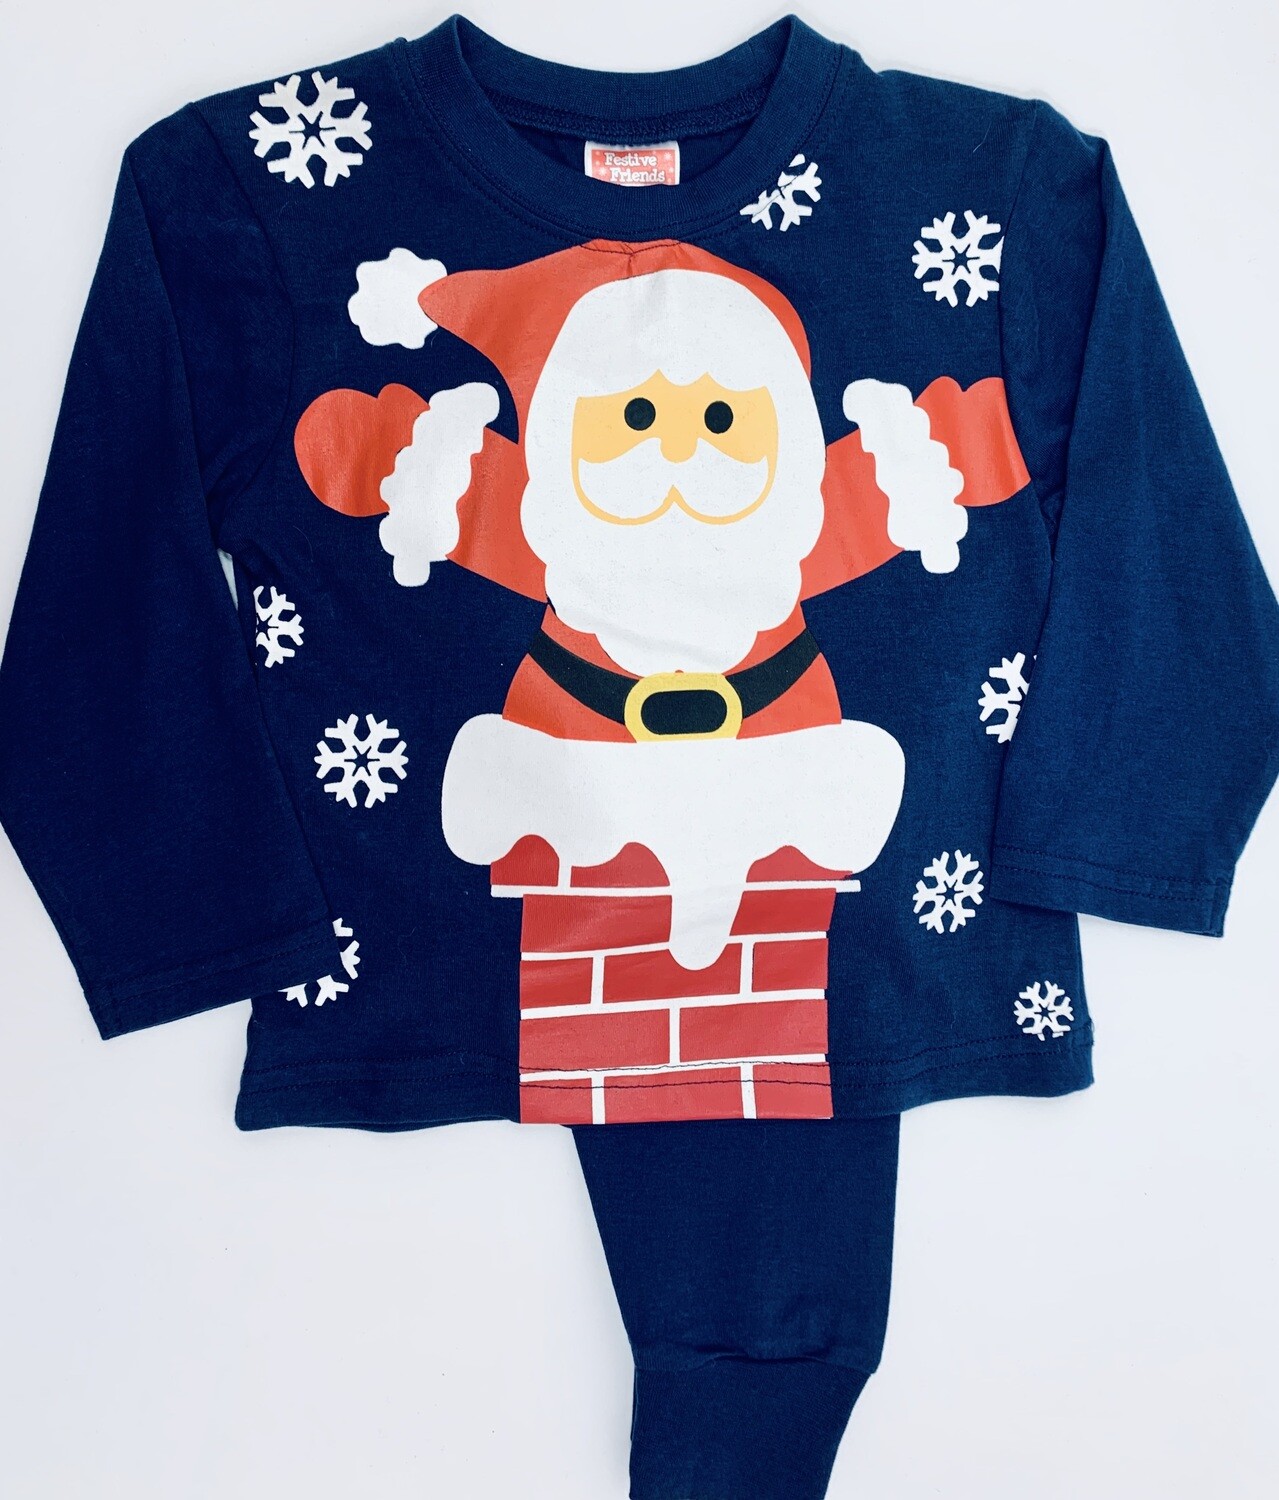 Navy Santa pyjamas